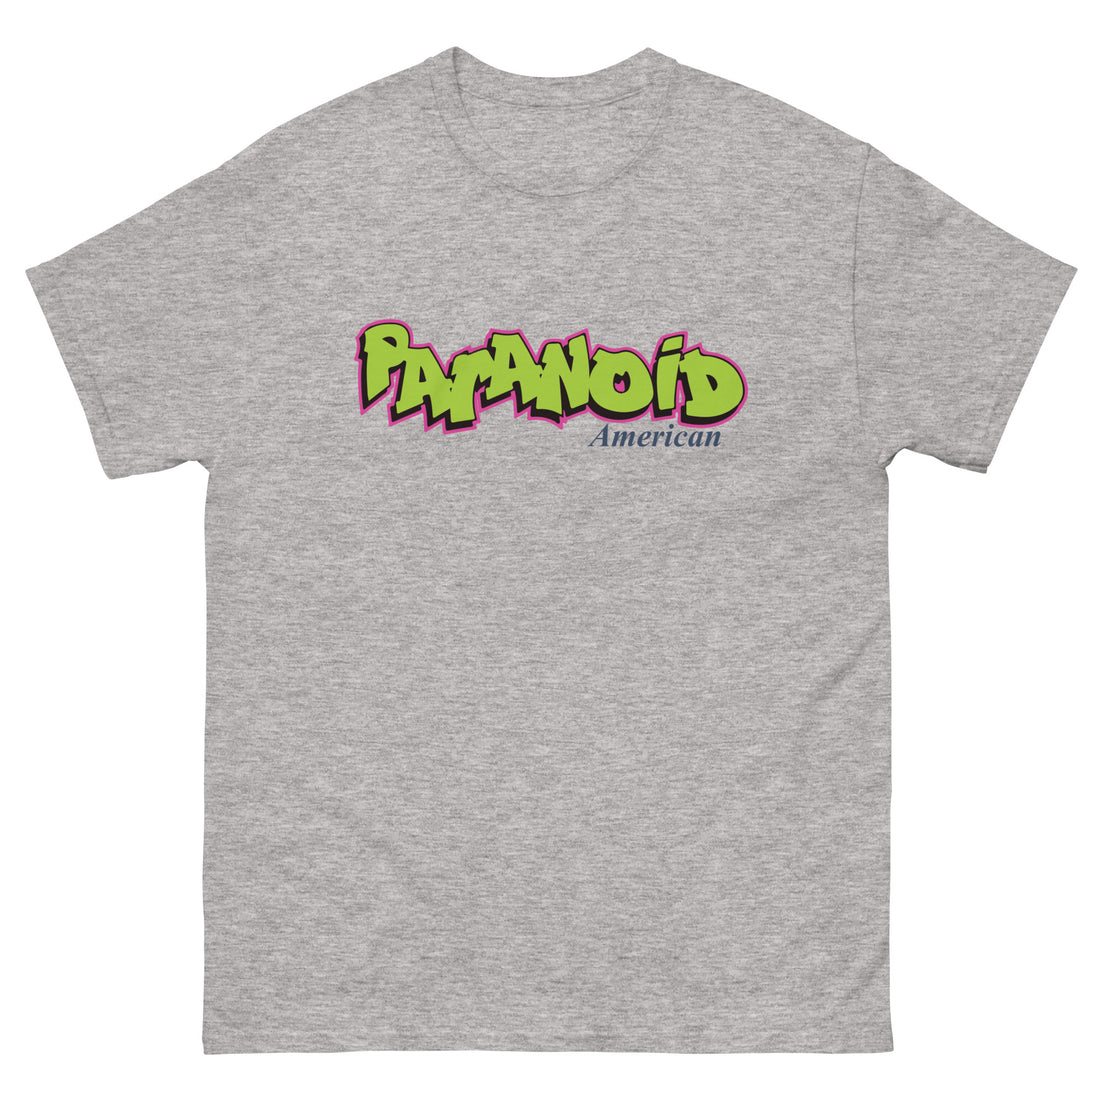 Fresh Paranoid Shirt